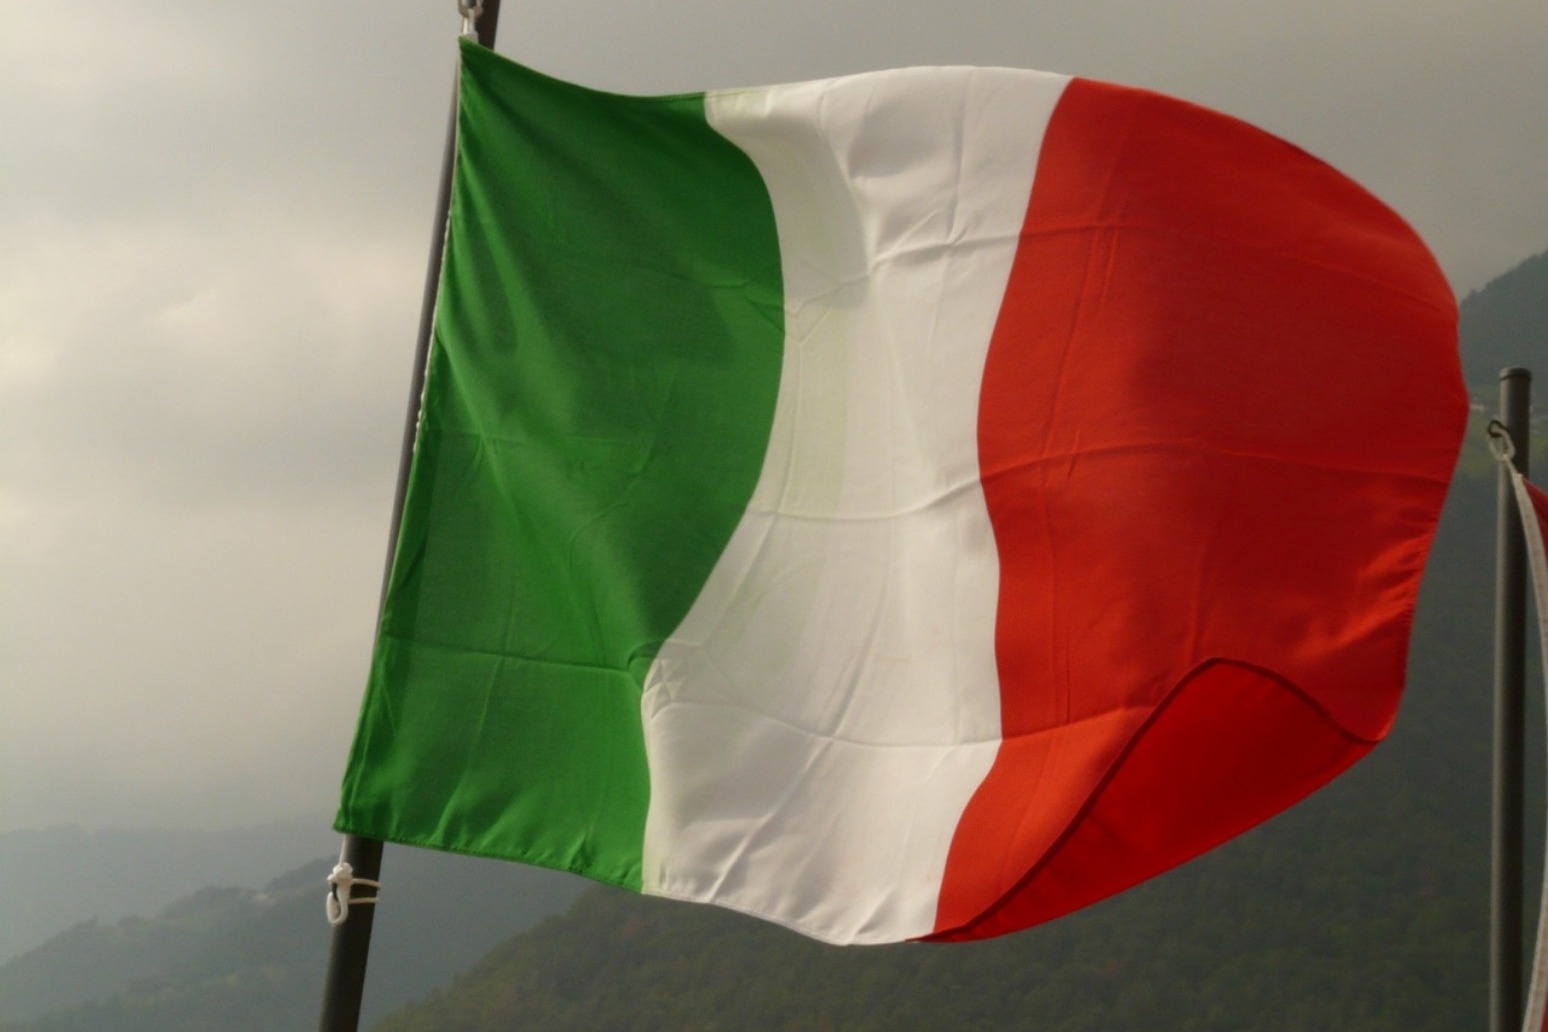 Italian PM Conte resigns- denounces Salvini for toppling government 